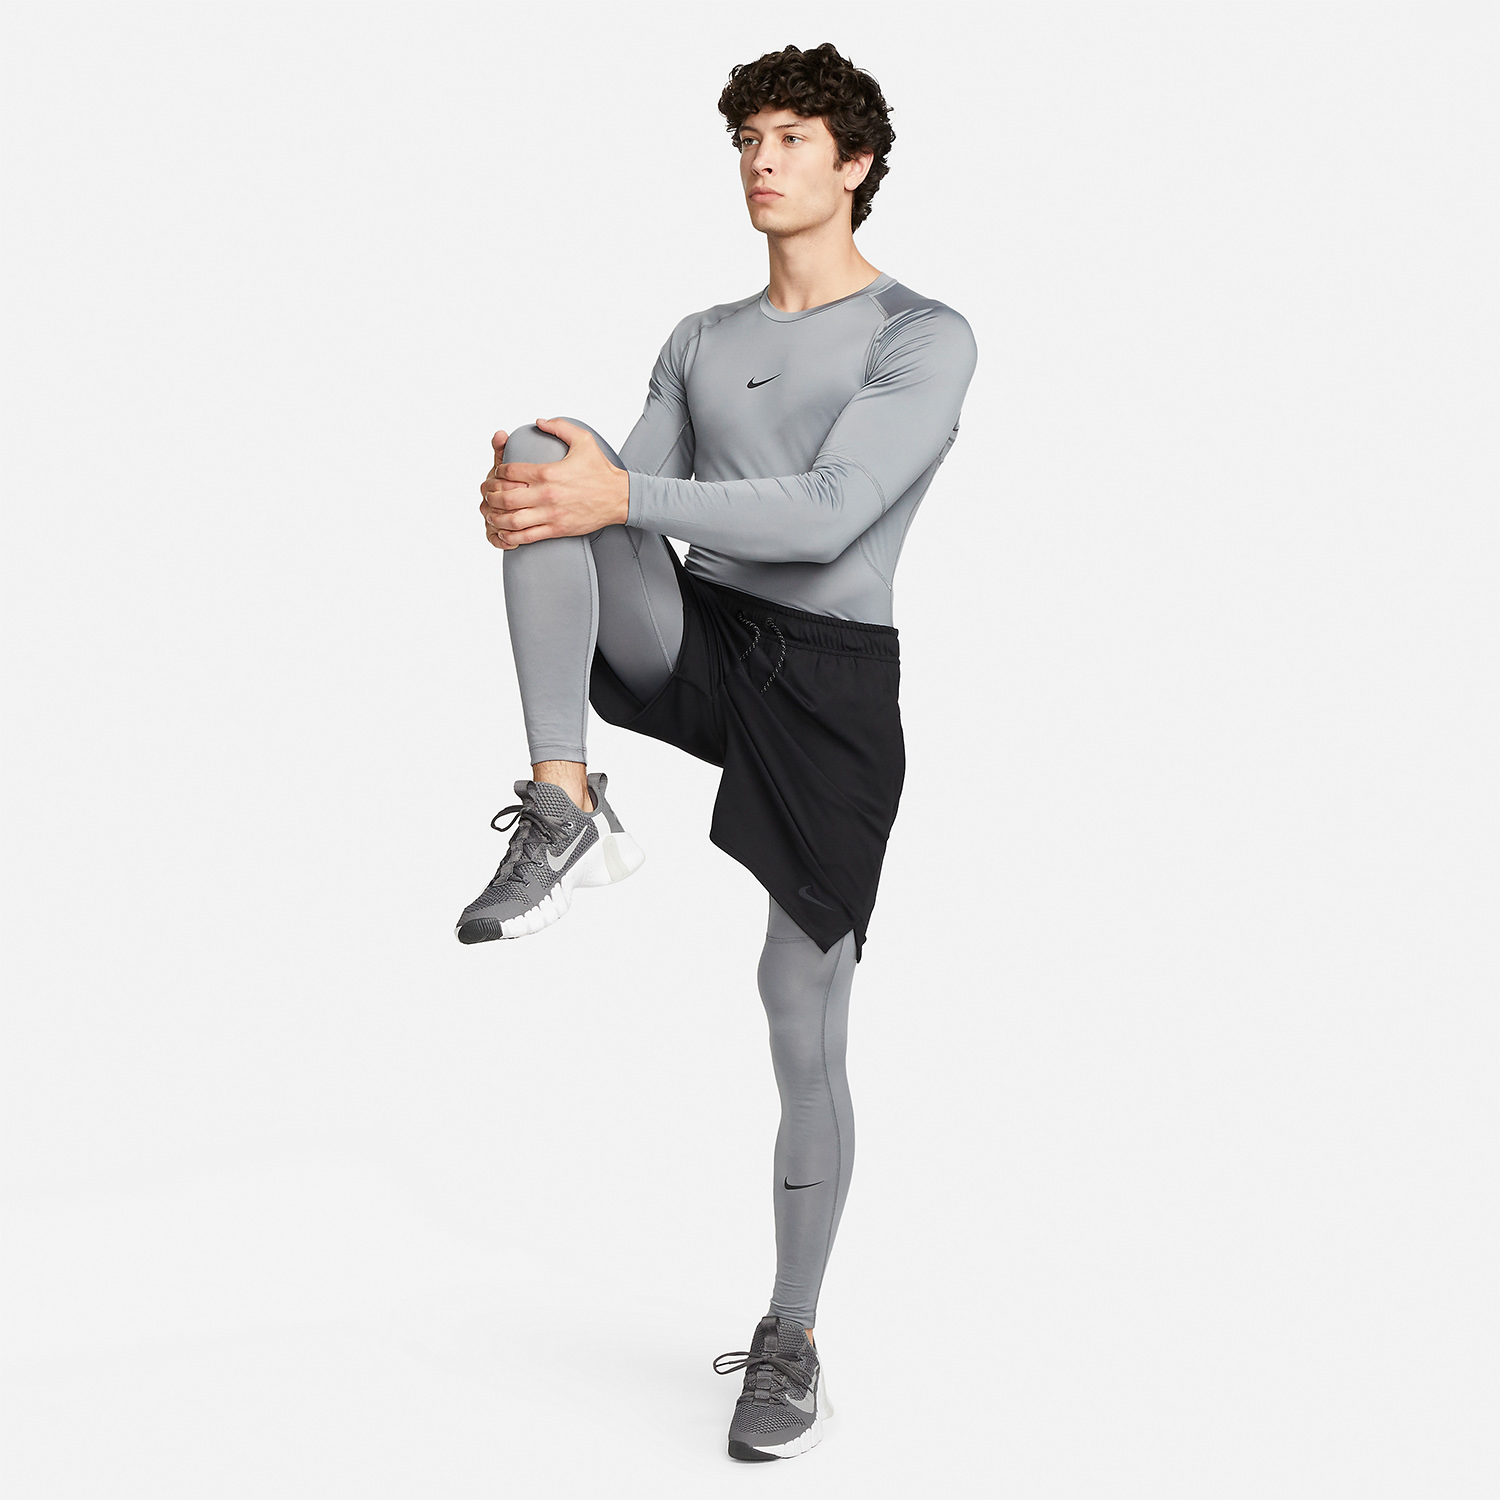 Nike Dri-FIT Logo Camisa - Smoke Grey/Black